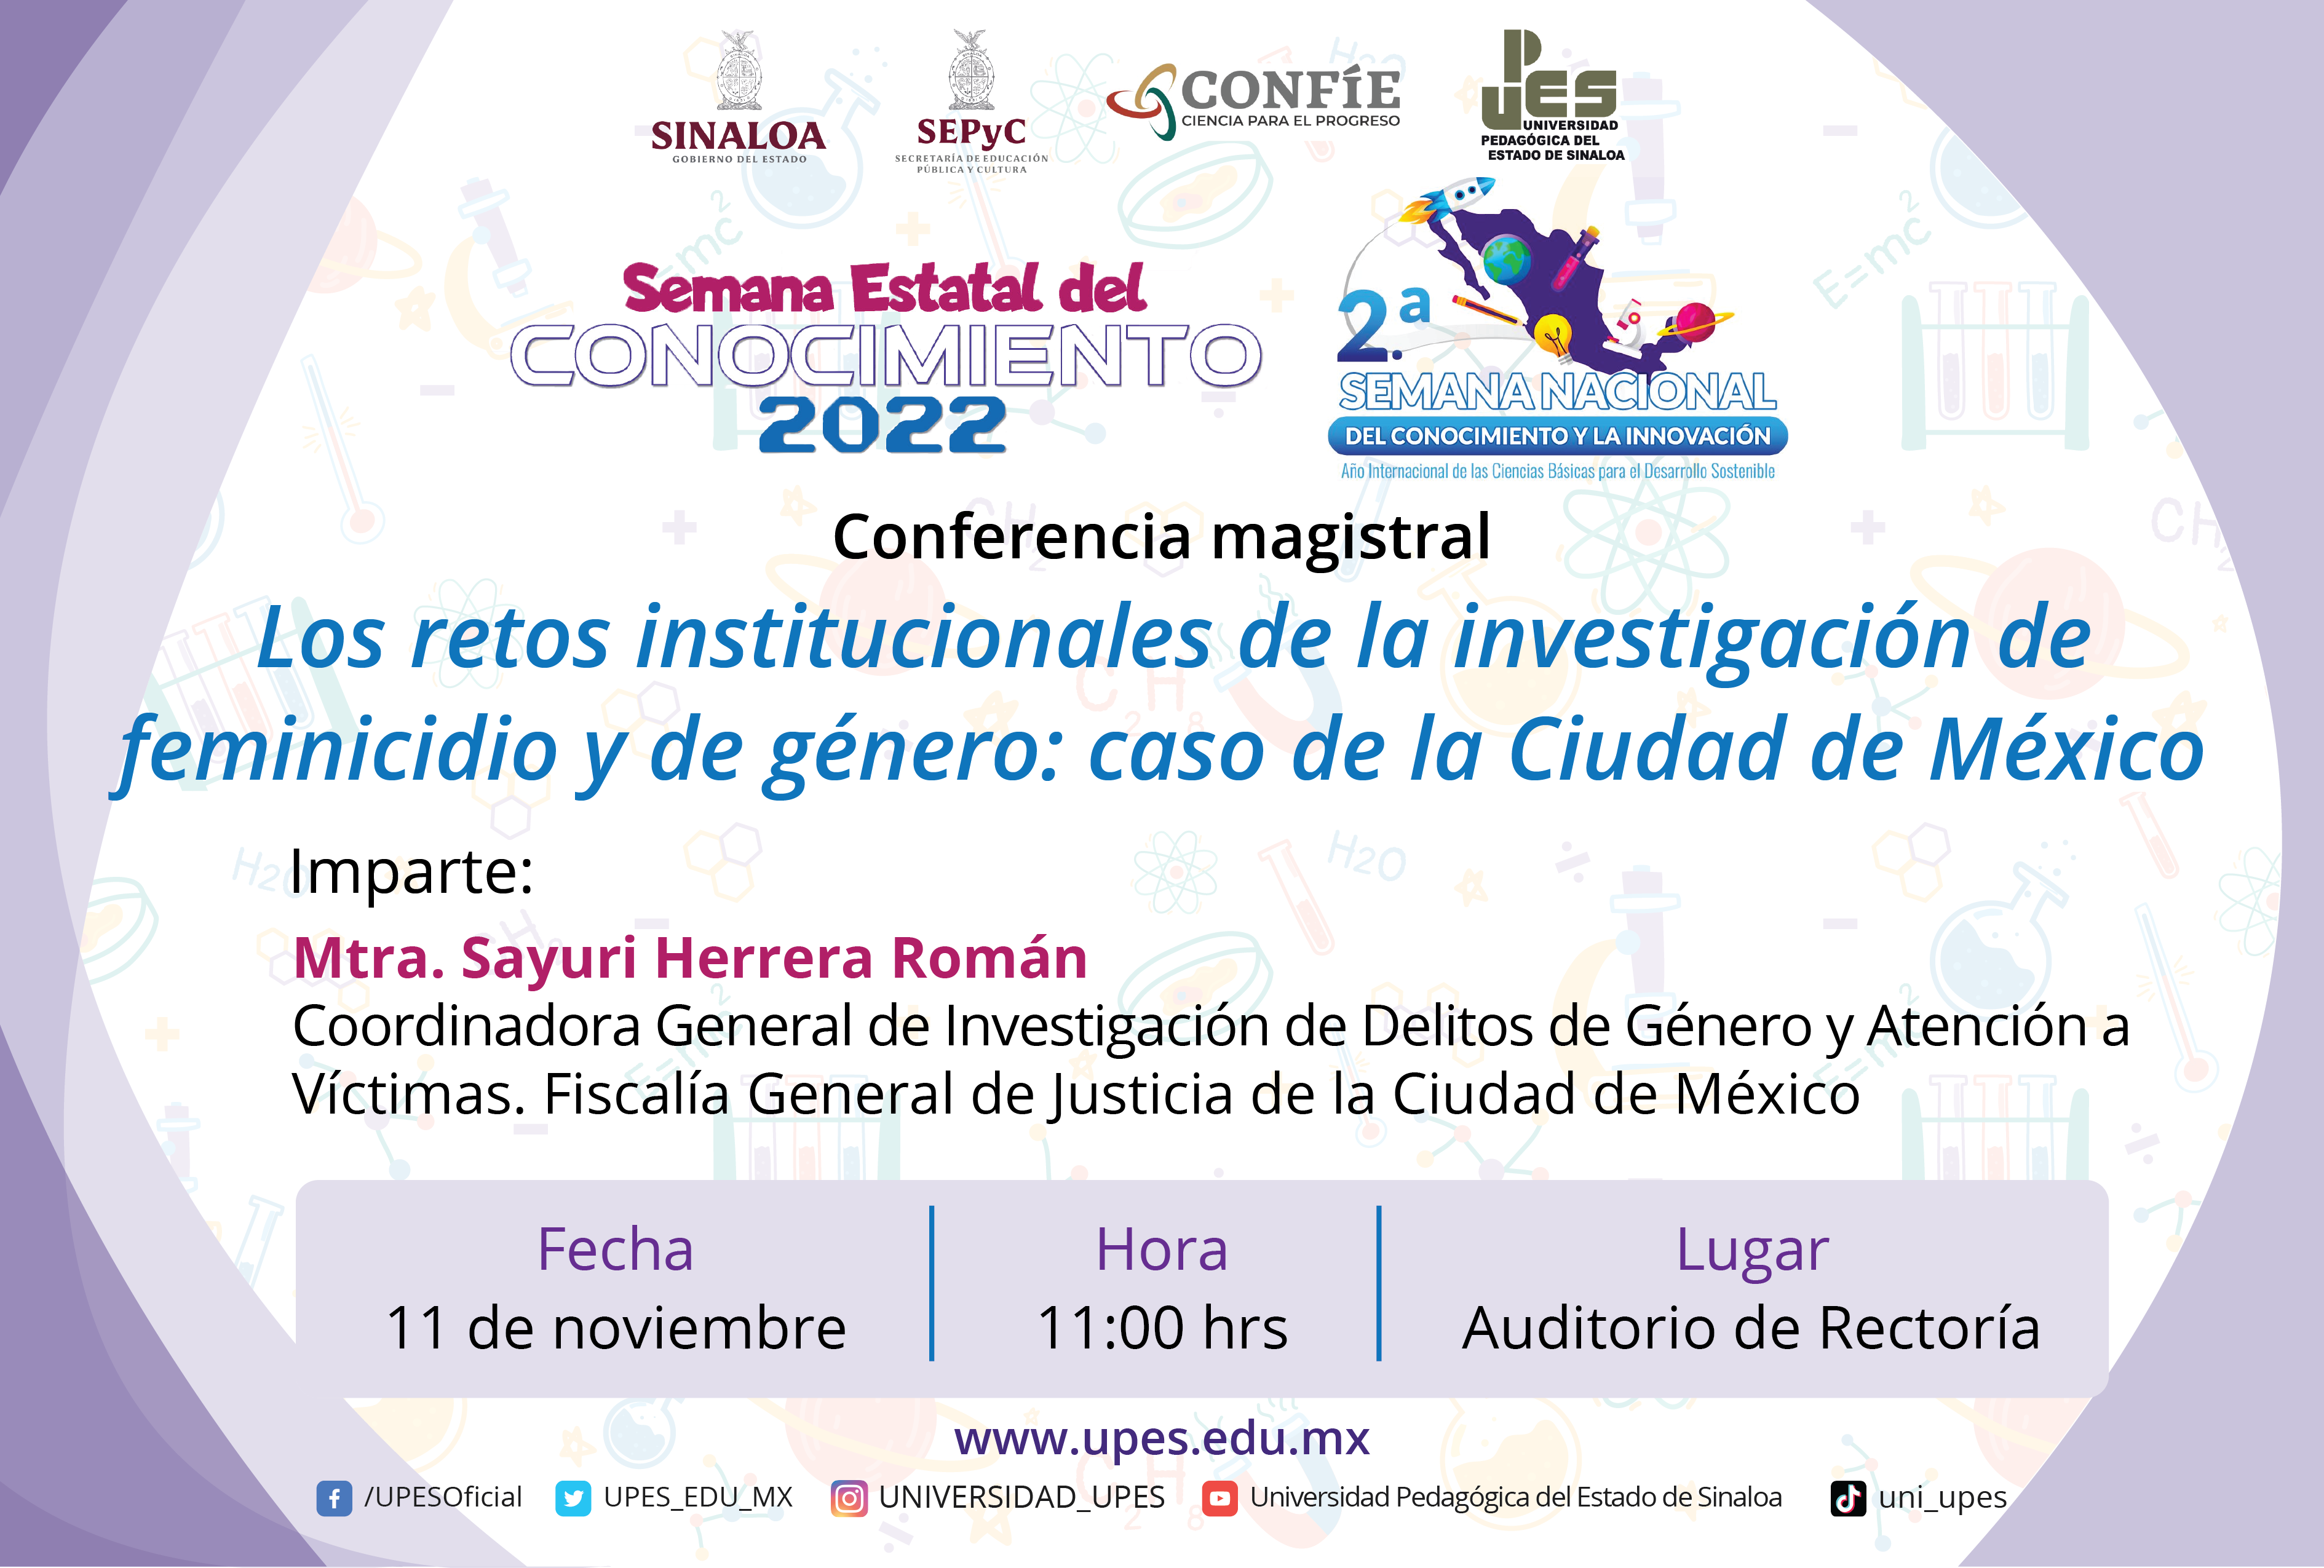 Sayuri Herrera Román, Coordinadora General de Investigación de Delitos de Género y Atención a Víctimas de la Fiscalía General de Justicia de la Ciudad de México, disertará conferencia en Upes